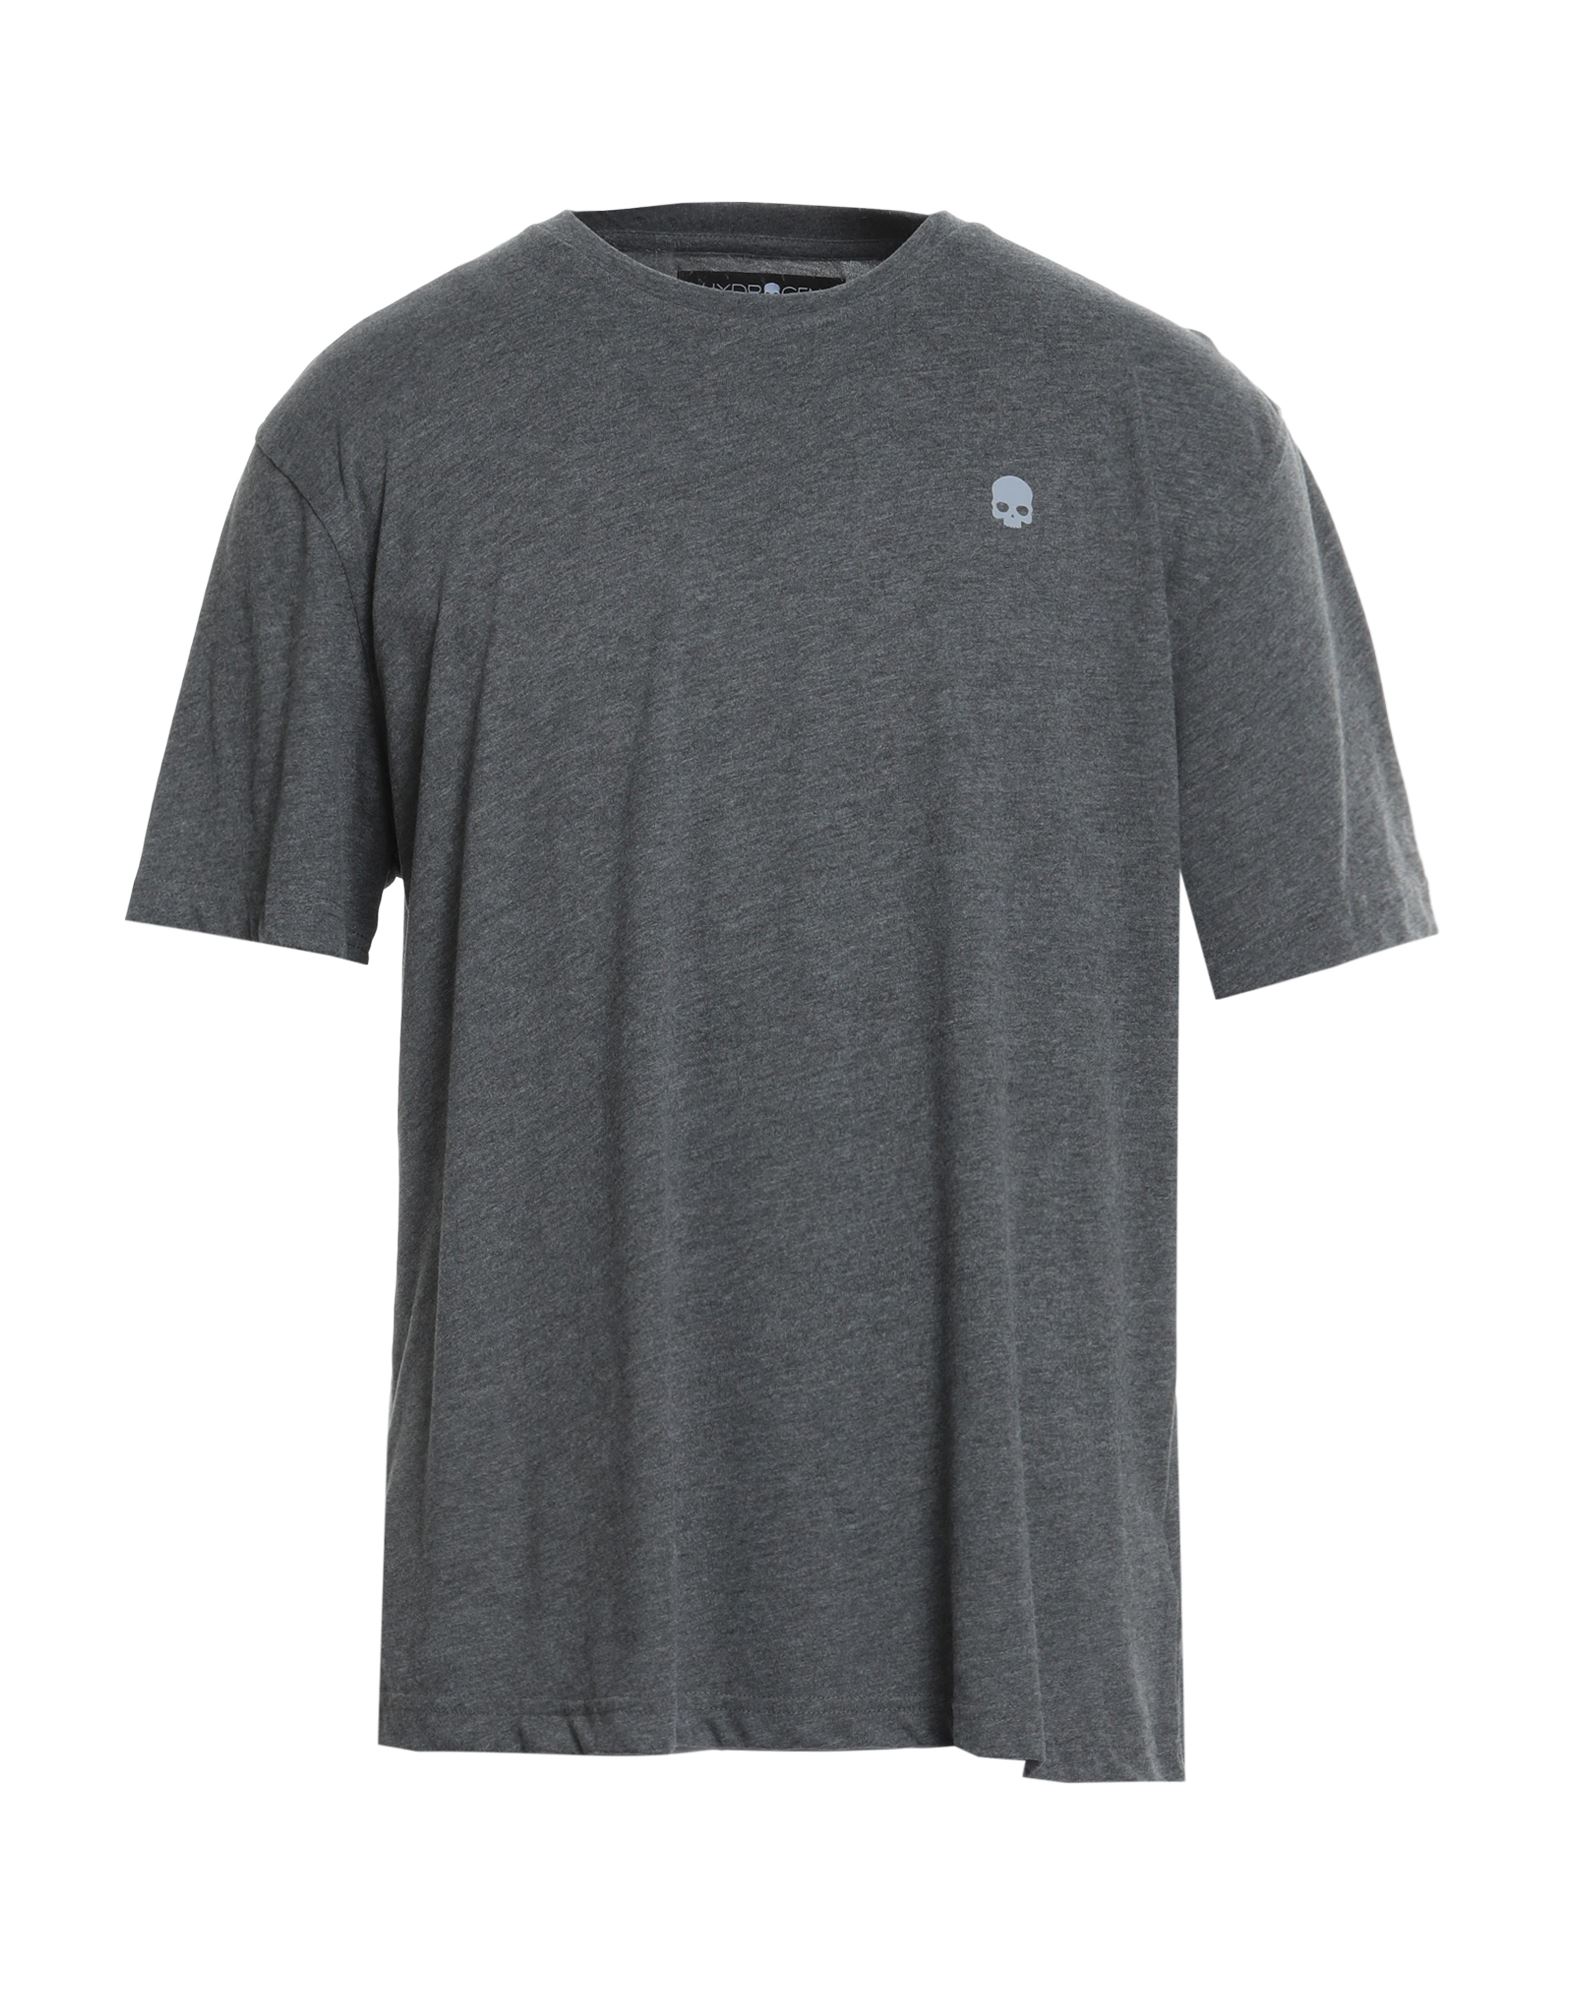 Hydrogen T-shirts In Grey